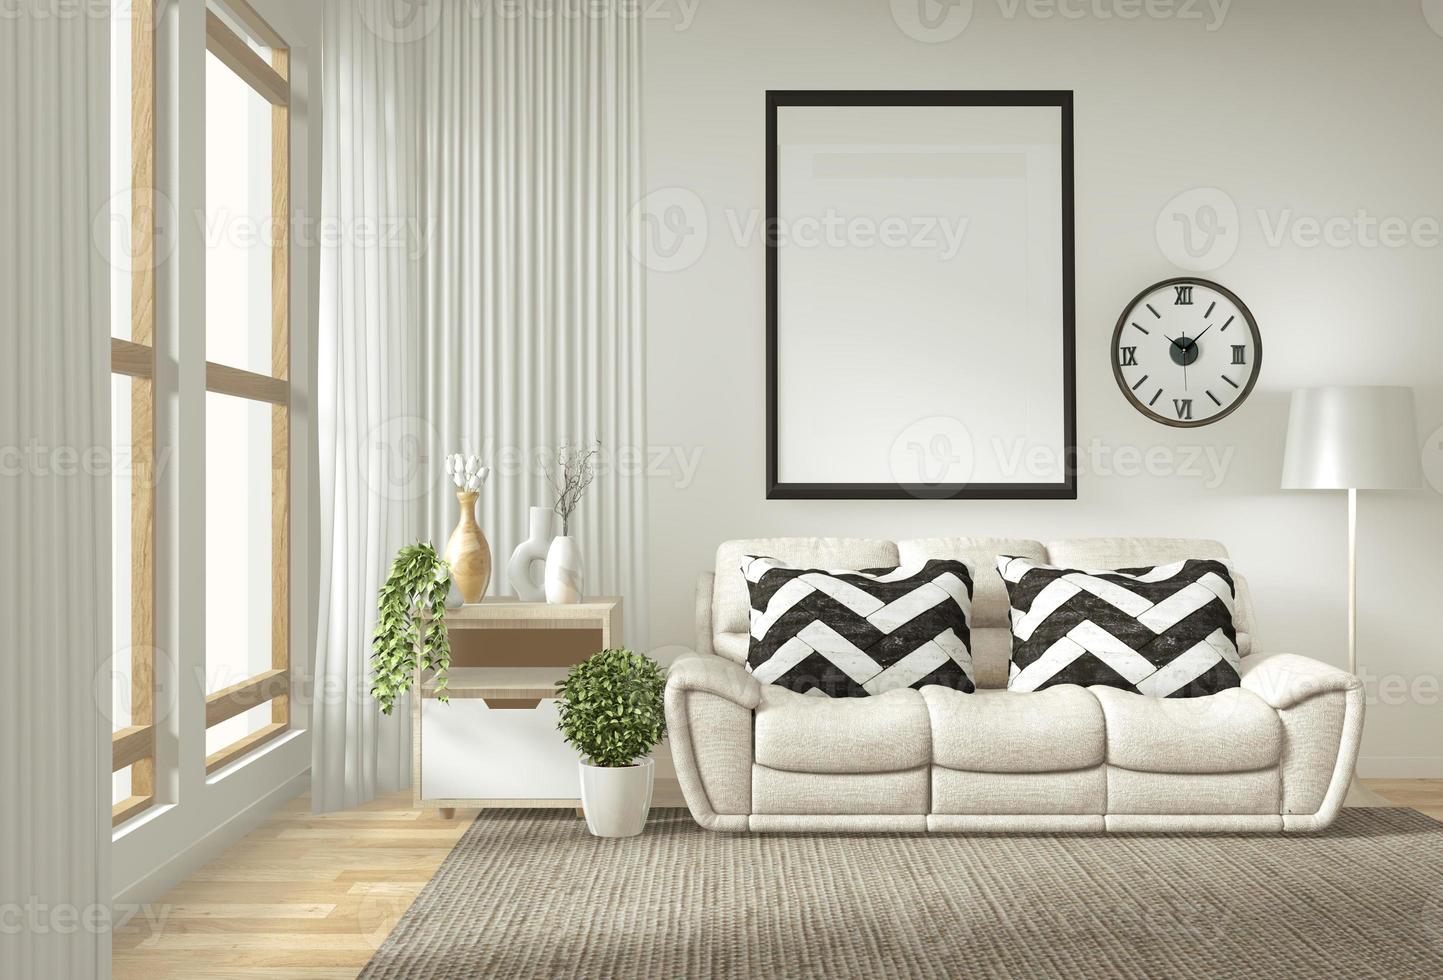 cadre d'affiche intérieur maquette salon avec canapé blanc design minimaliste. rendu 3D. photo